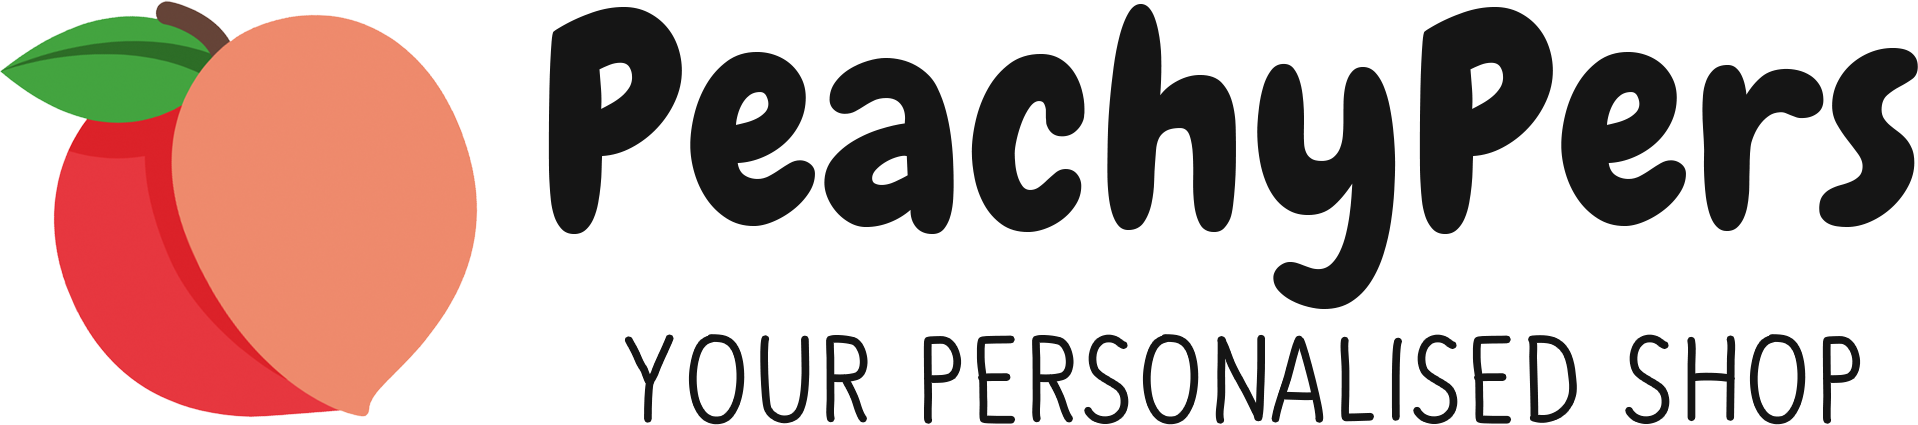 PeachyPers Logo